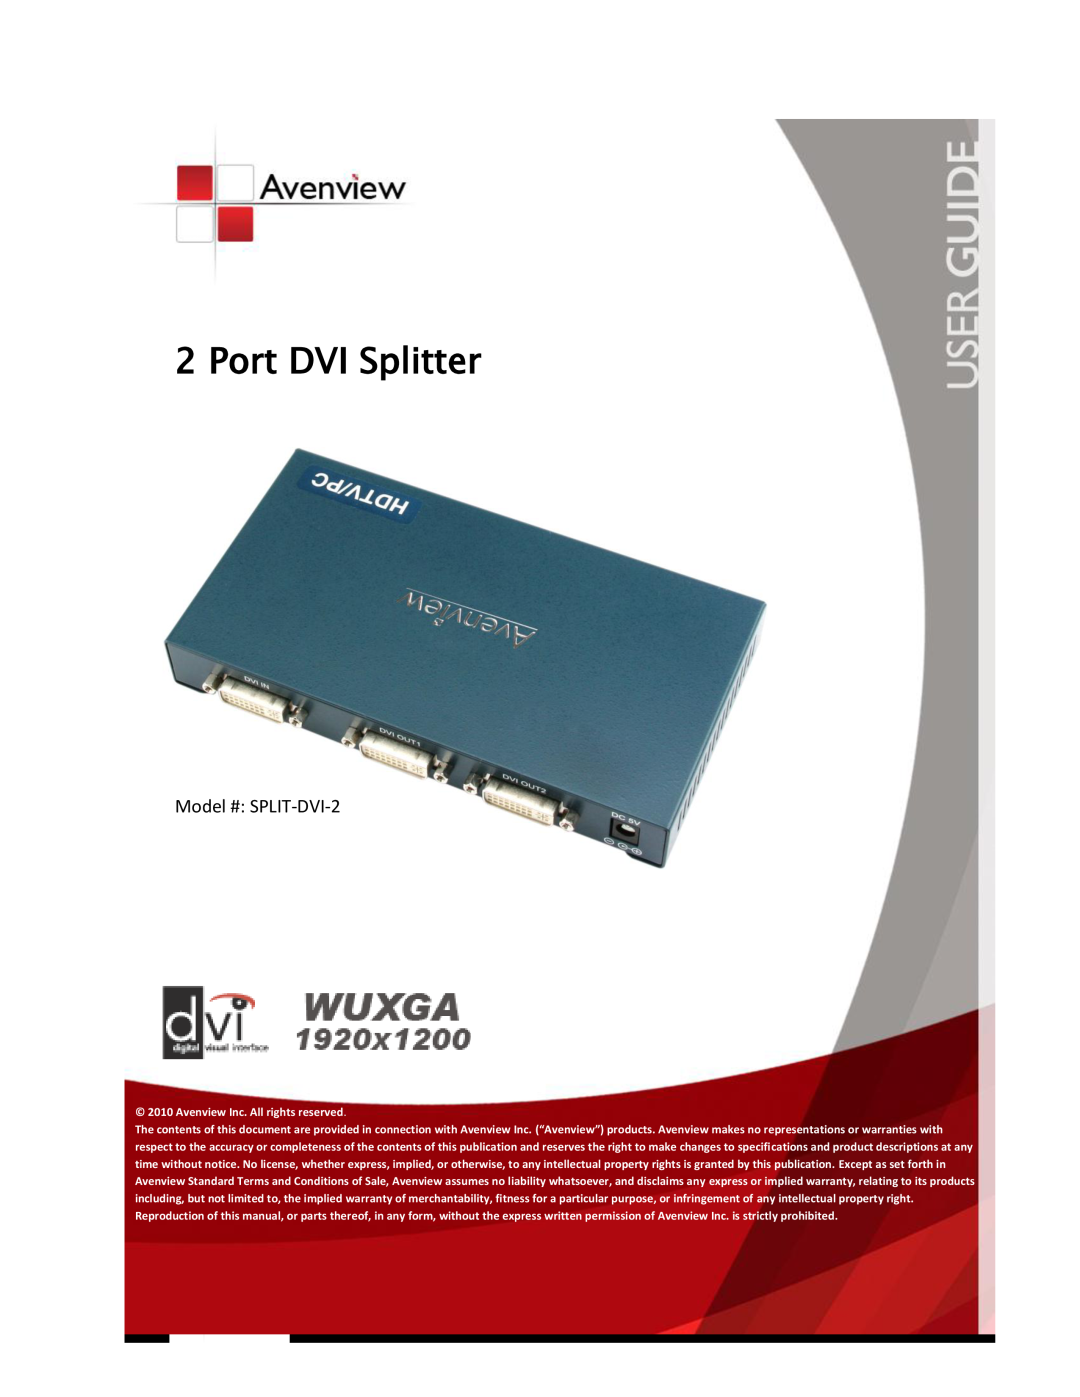 Avenview specifications Model # SPLIT-DVI-2, Port DVI Splitter 